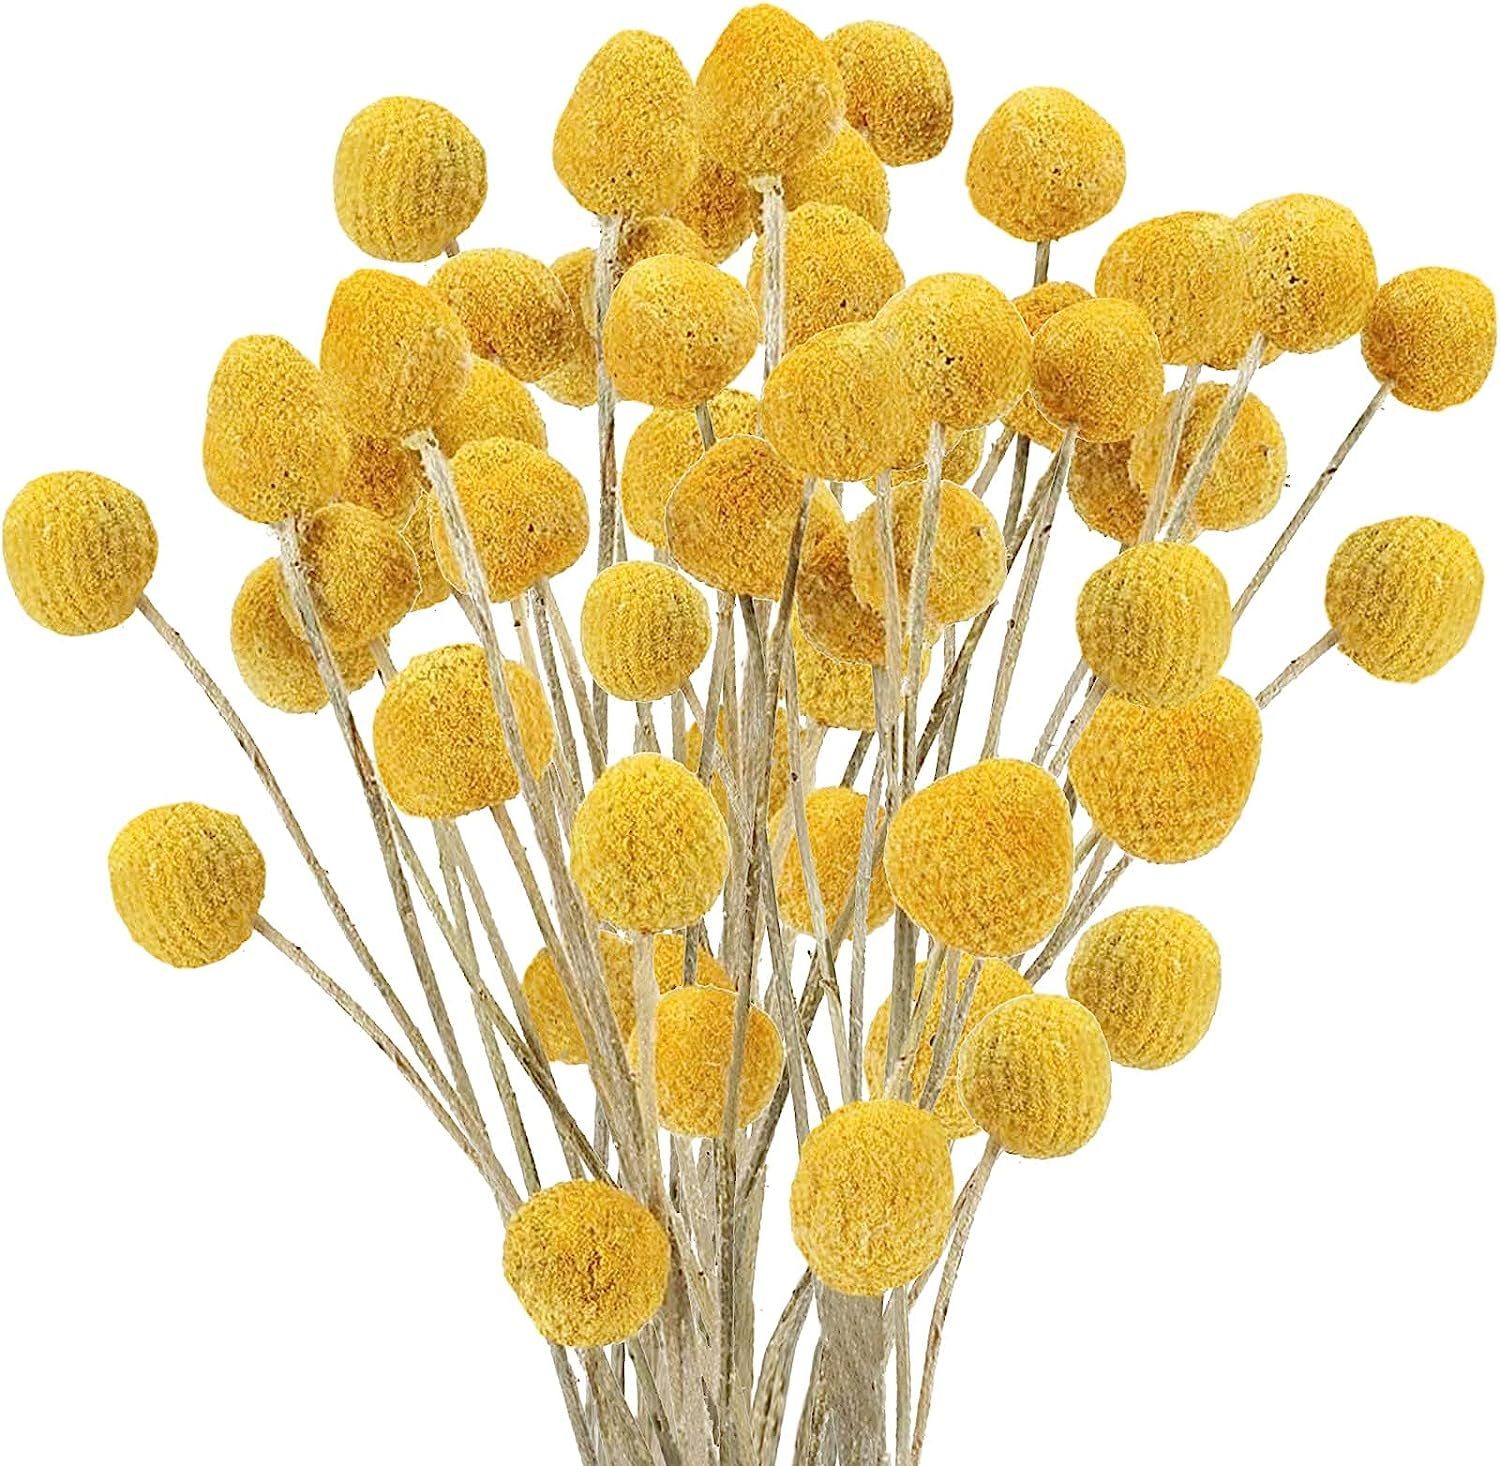 Bälle,Billy ZmdecQna Knöpfe,Gelb, getrocknete natürliche Blumen,Craspedia Billy Kunstpflanze